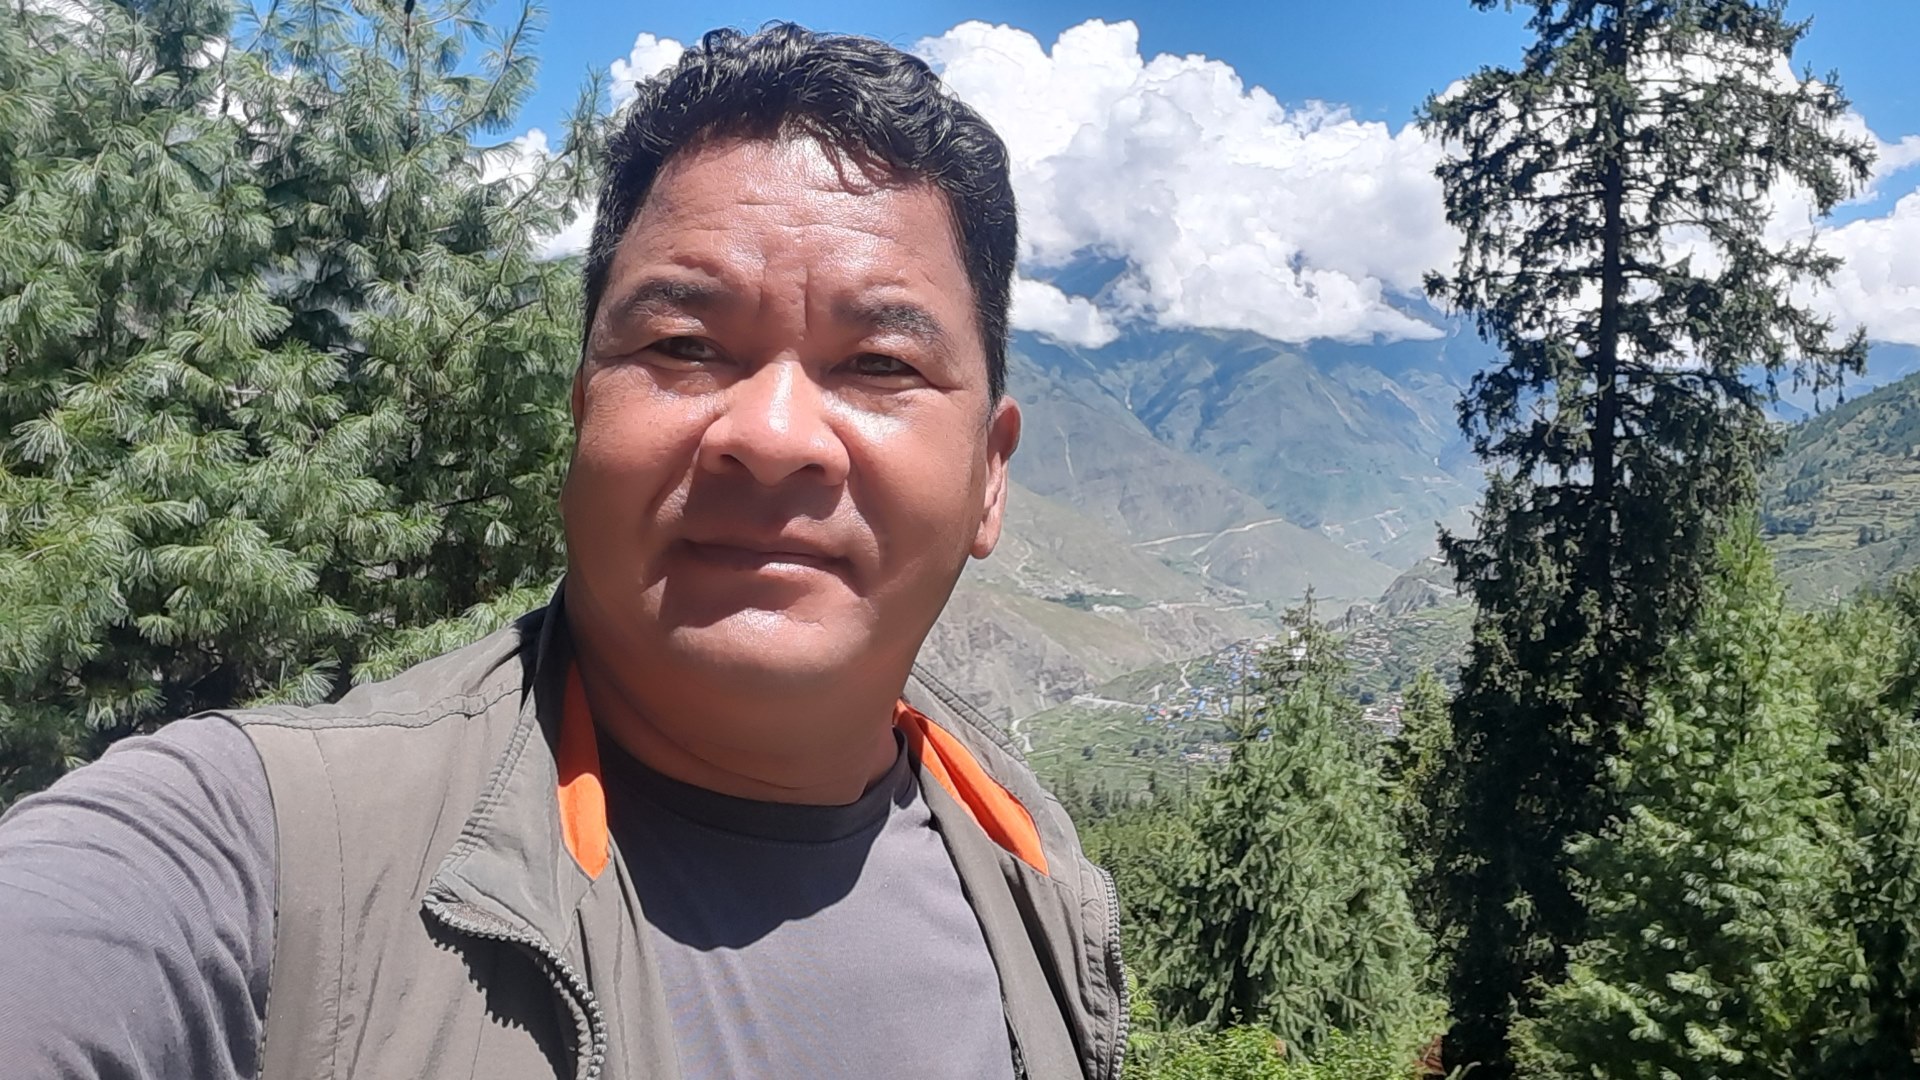 Govinda taking a selfie in front of a hilly landscape